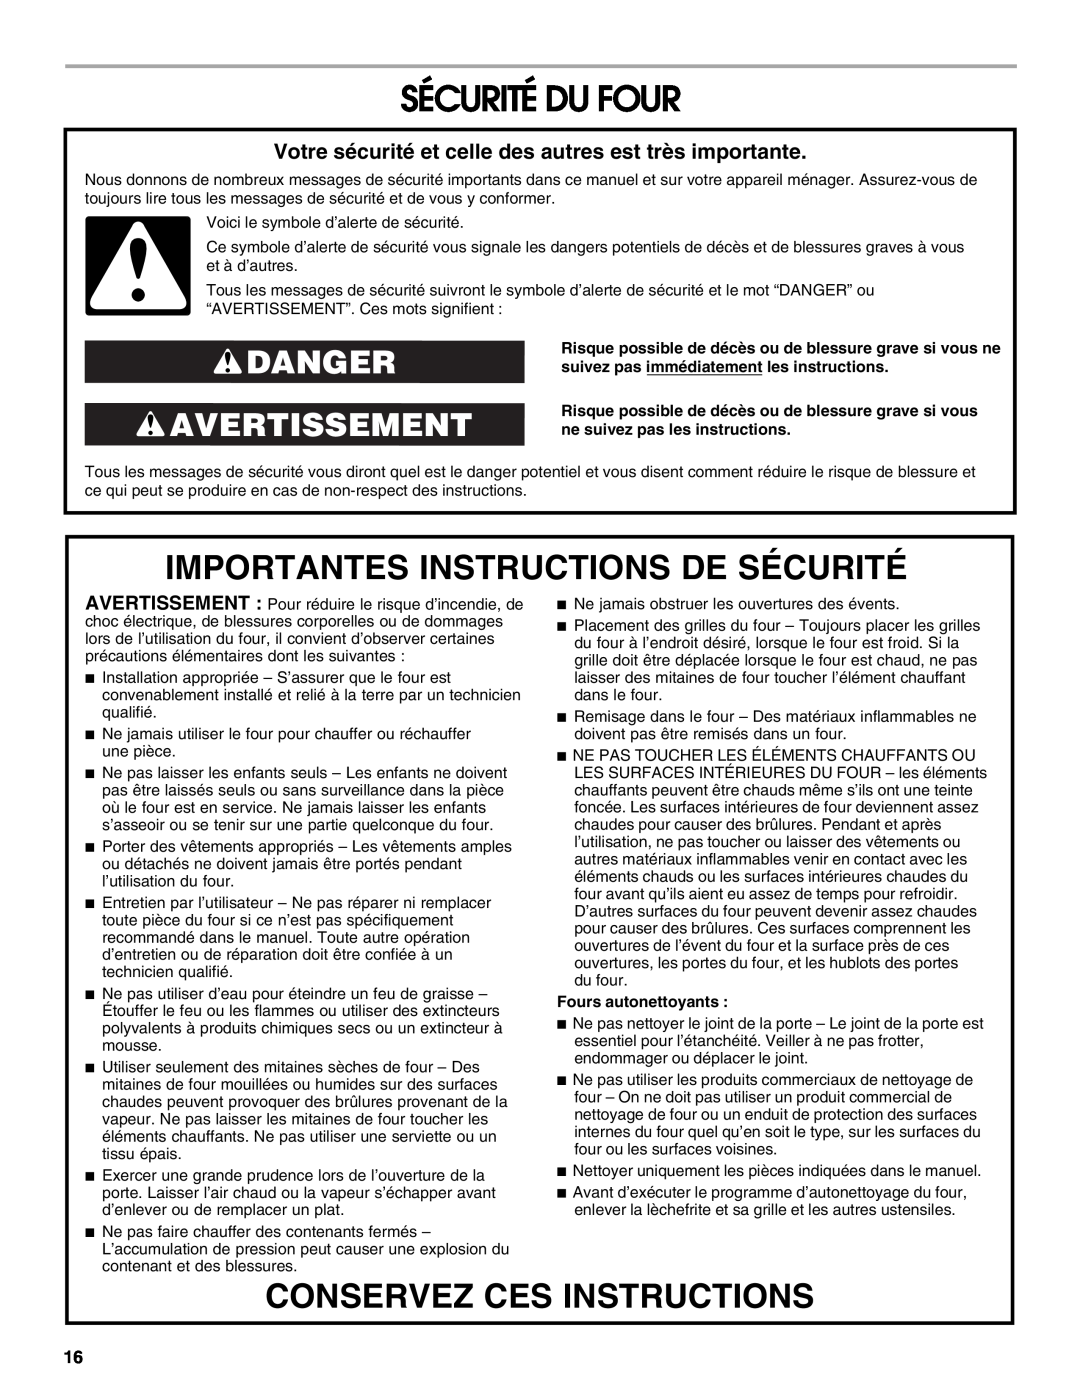 Whirlpool IBS550P Sécurité Du Four, Importantes Instructions De Sécurité, Conservez Ces Instructions, Danger Avertissement 